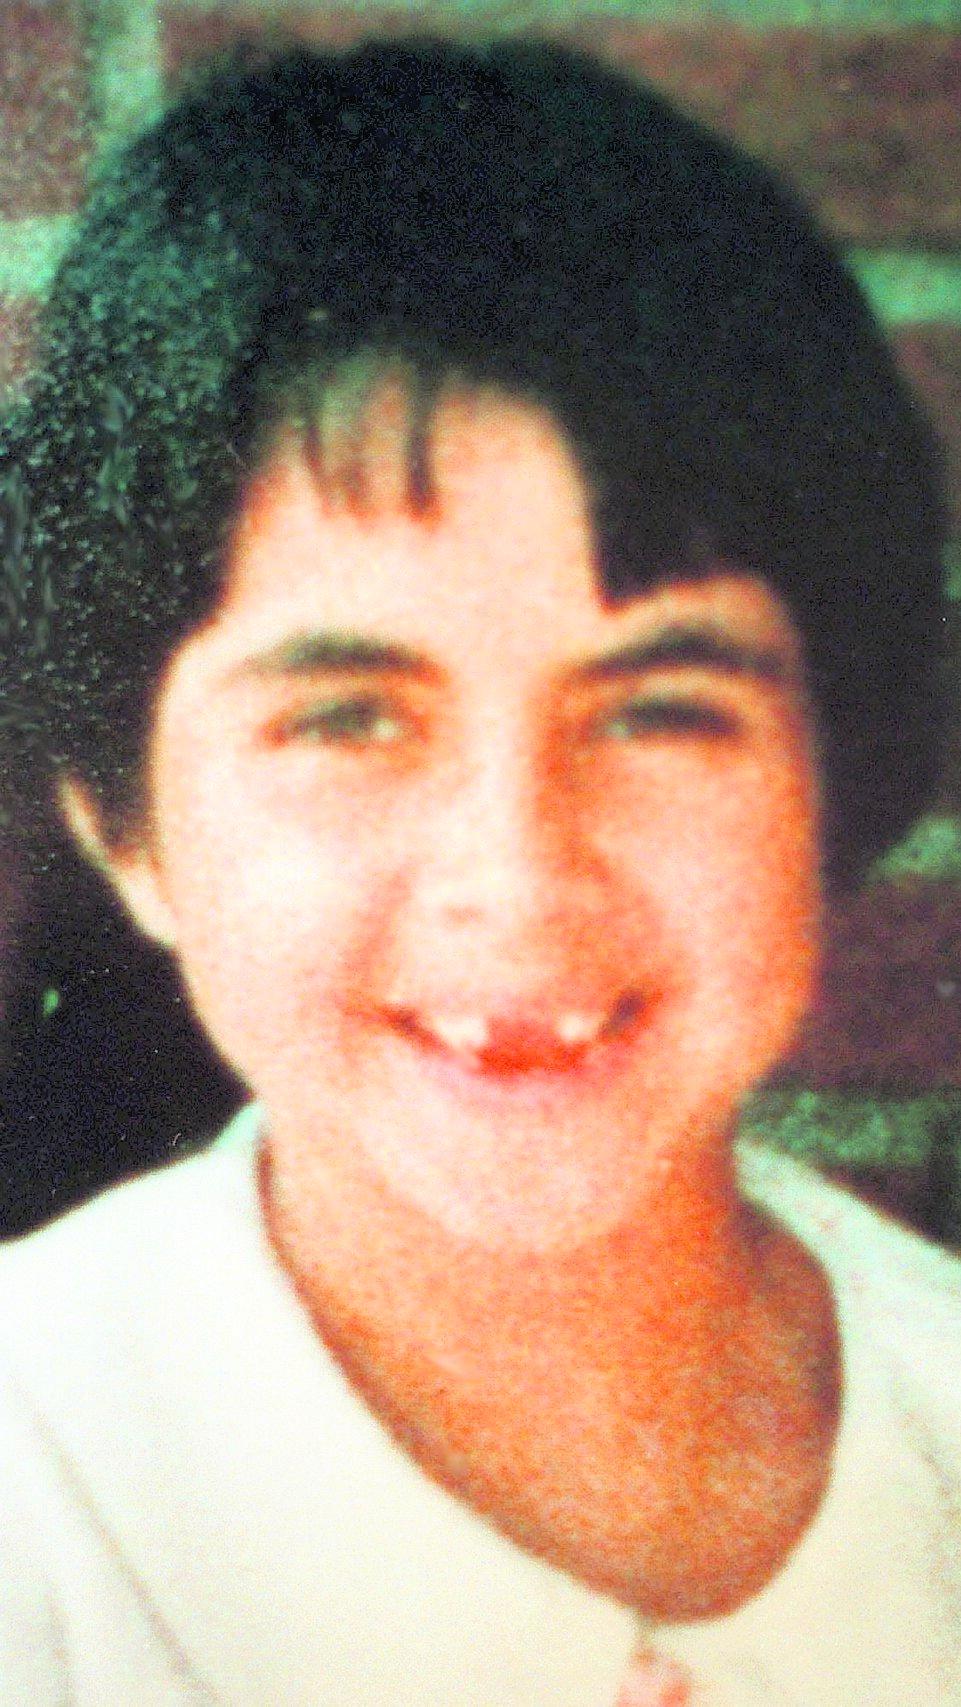 ERKÄNNANDET RÄCKTE Therese Johannessen, 9, försvann i norska Drammen 1988. Och även om hennes kropp aldrig har hittats så räckte Thomas Quicks historia om att han mördat flickan för att han 1998 skulle dömas för mord.